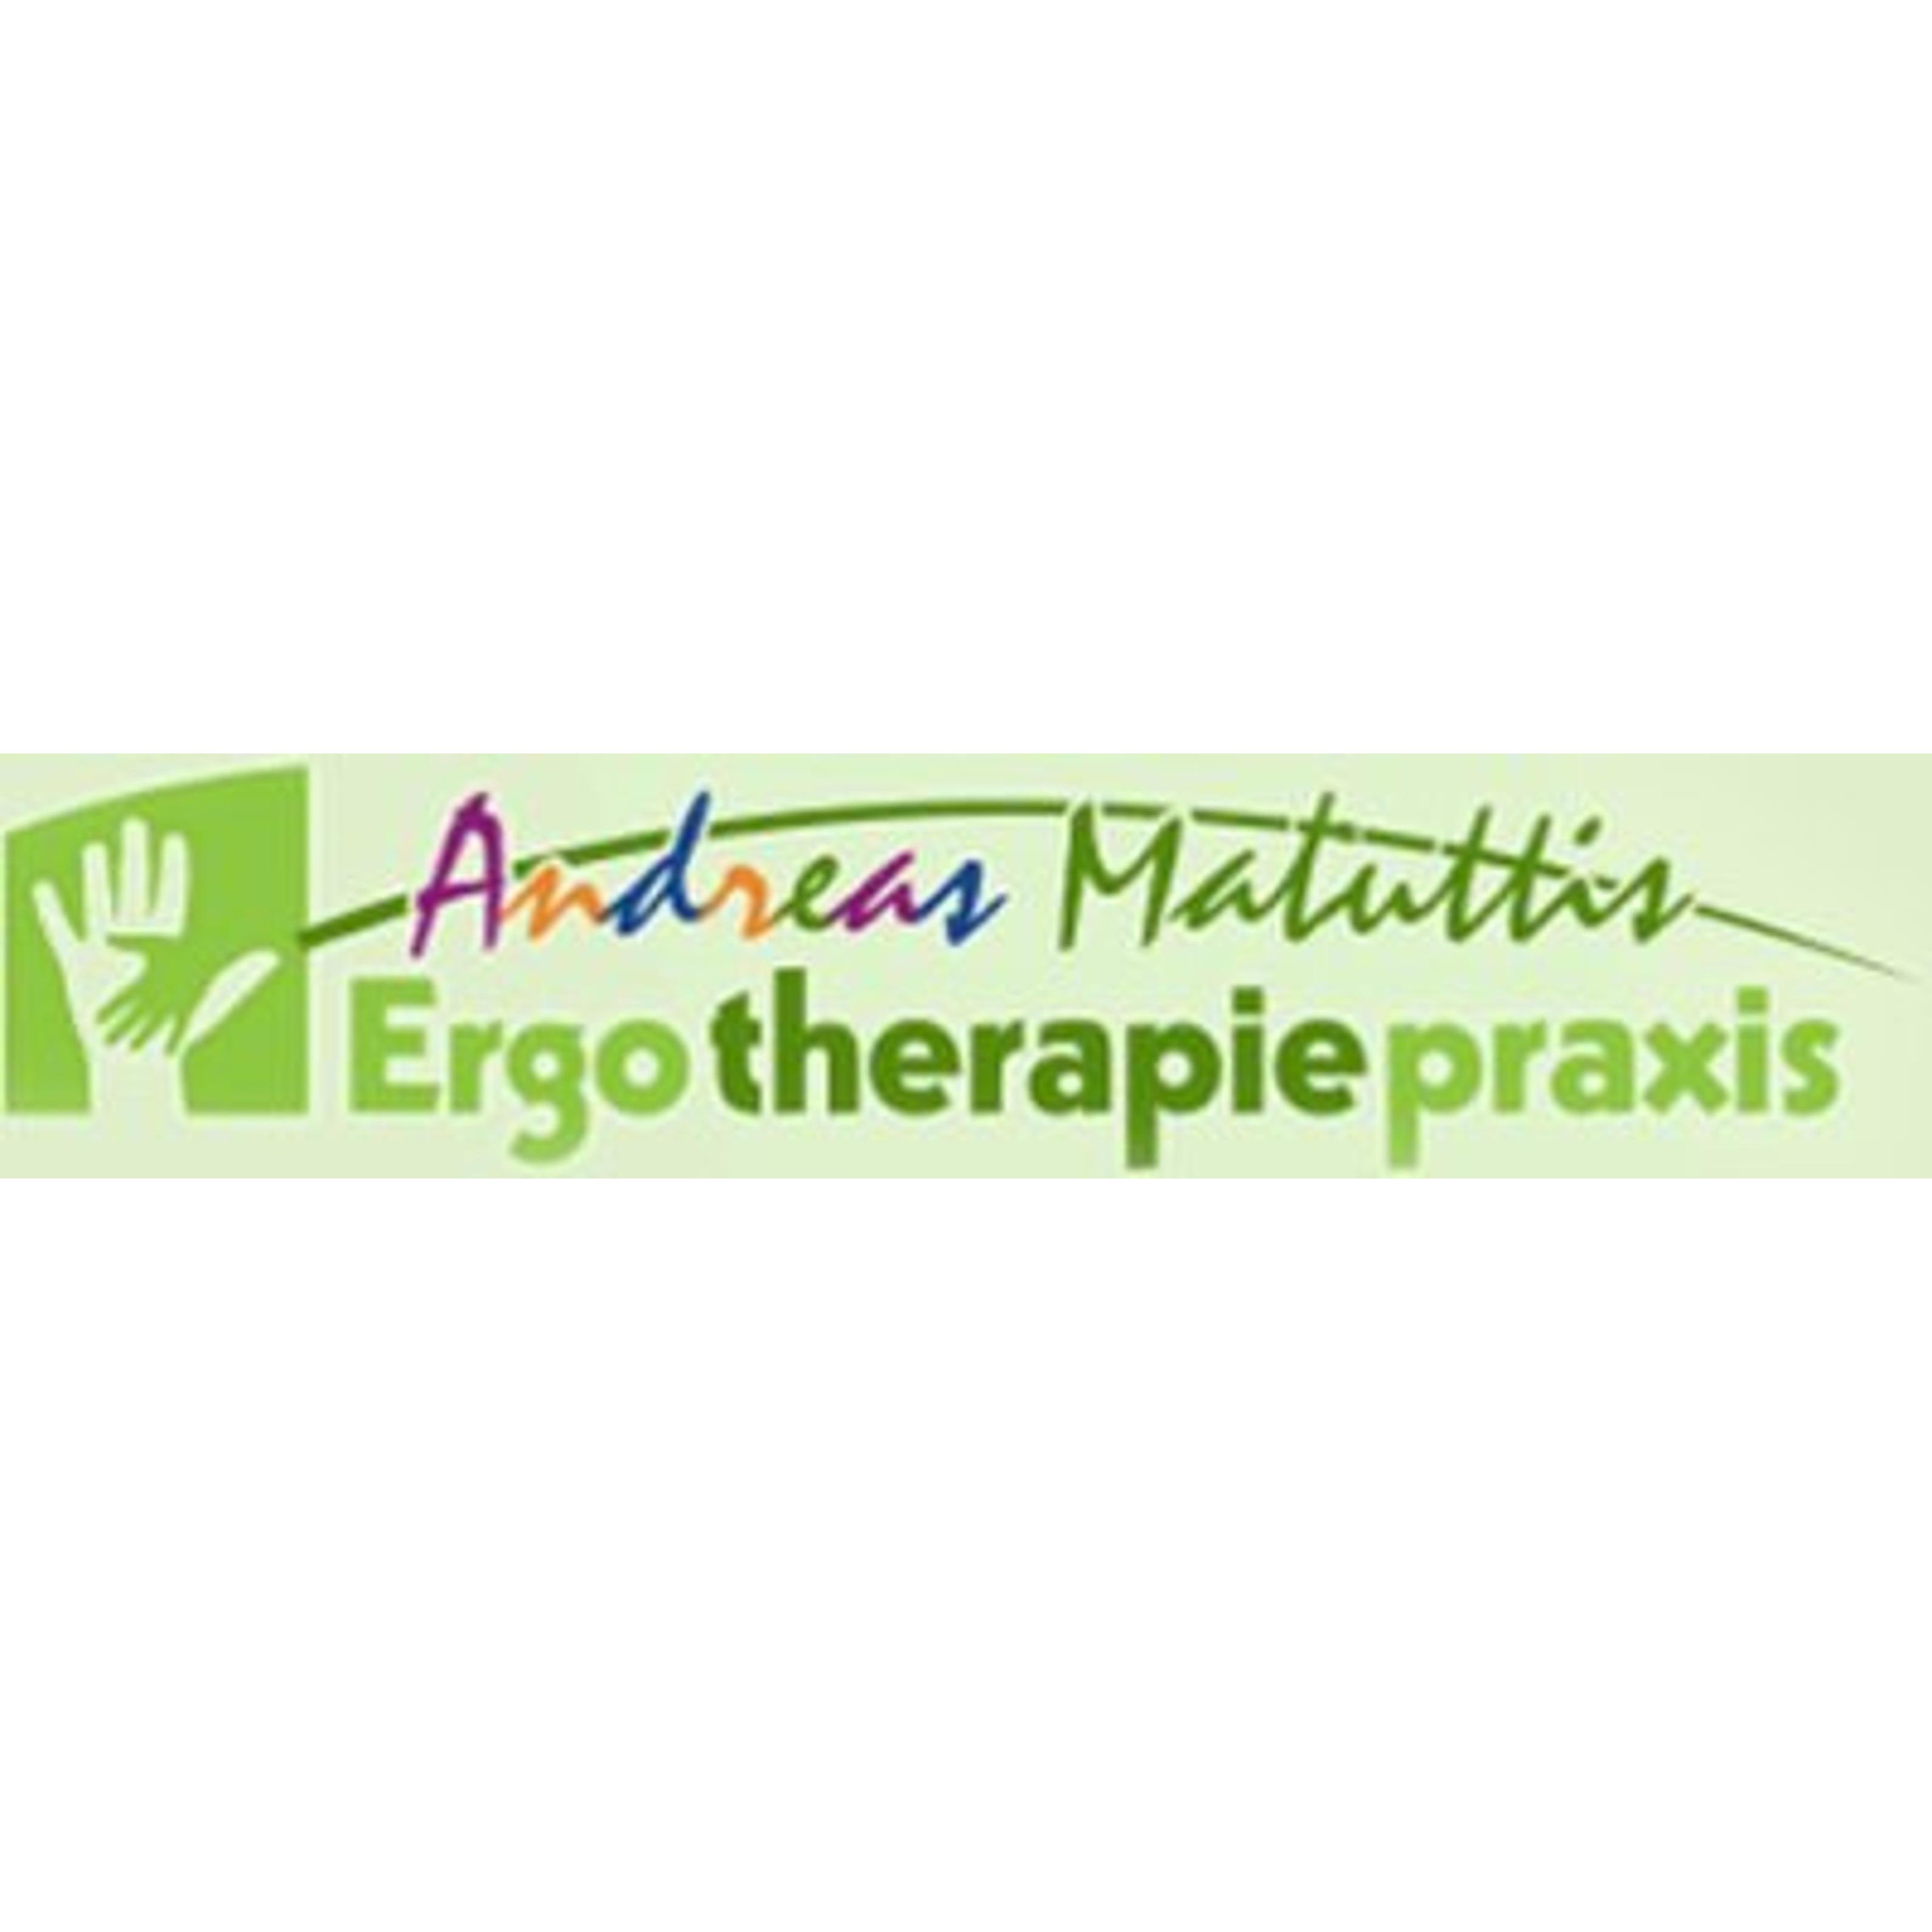 Ergotherapie Praxis Andreas Matuttis  